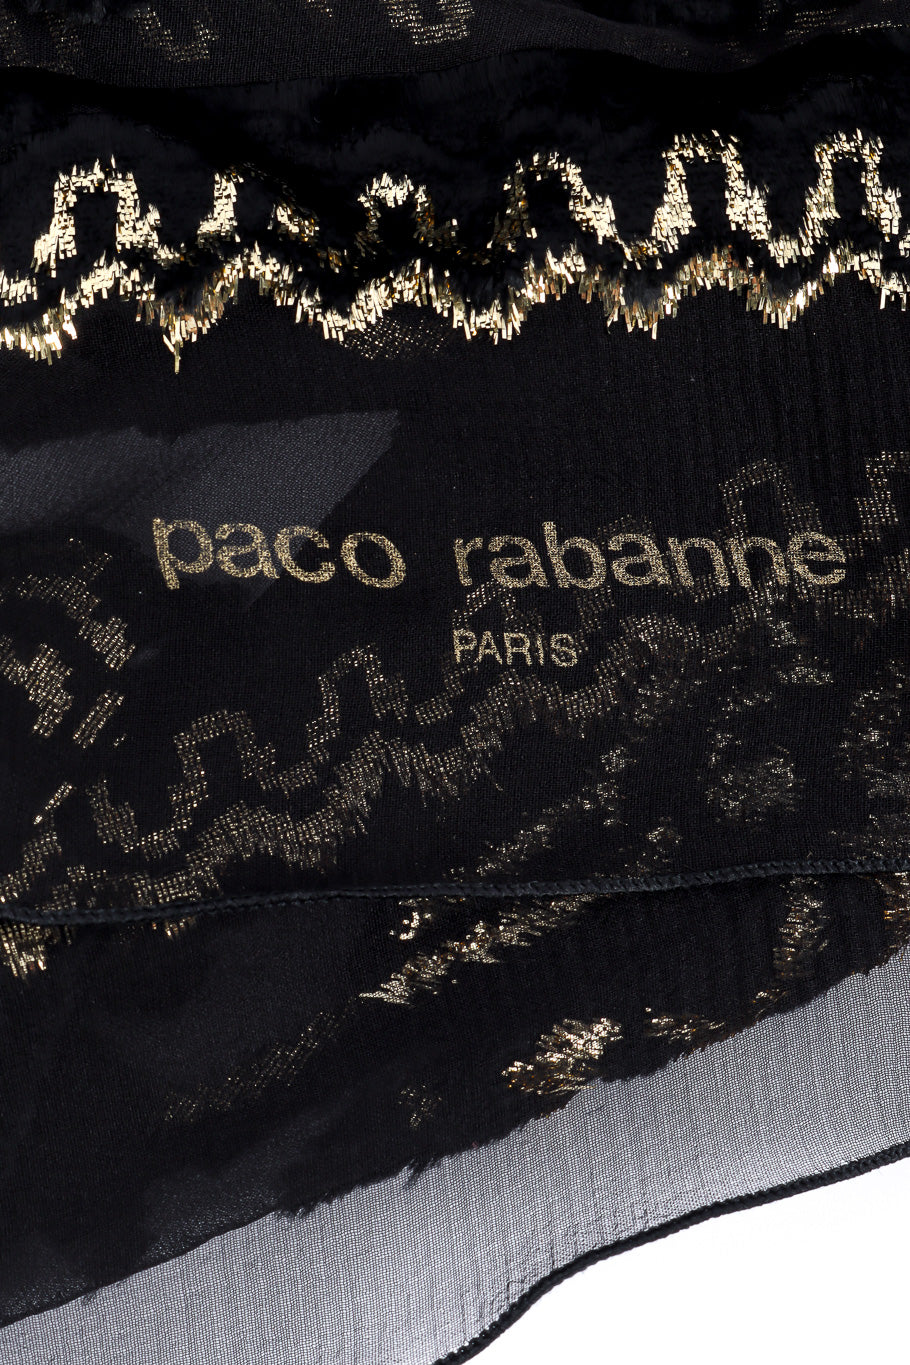 Chiffon velvet lamé scarf by Paco Rabanne signature @recessla